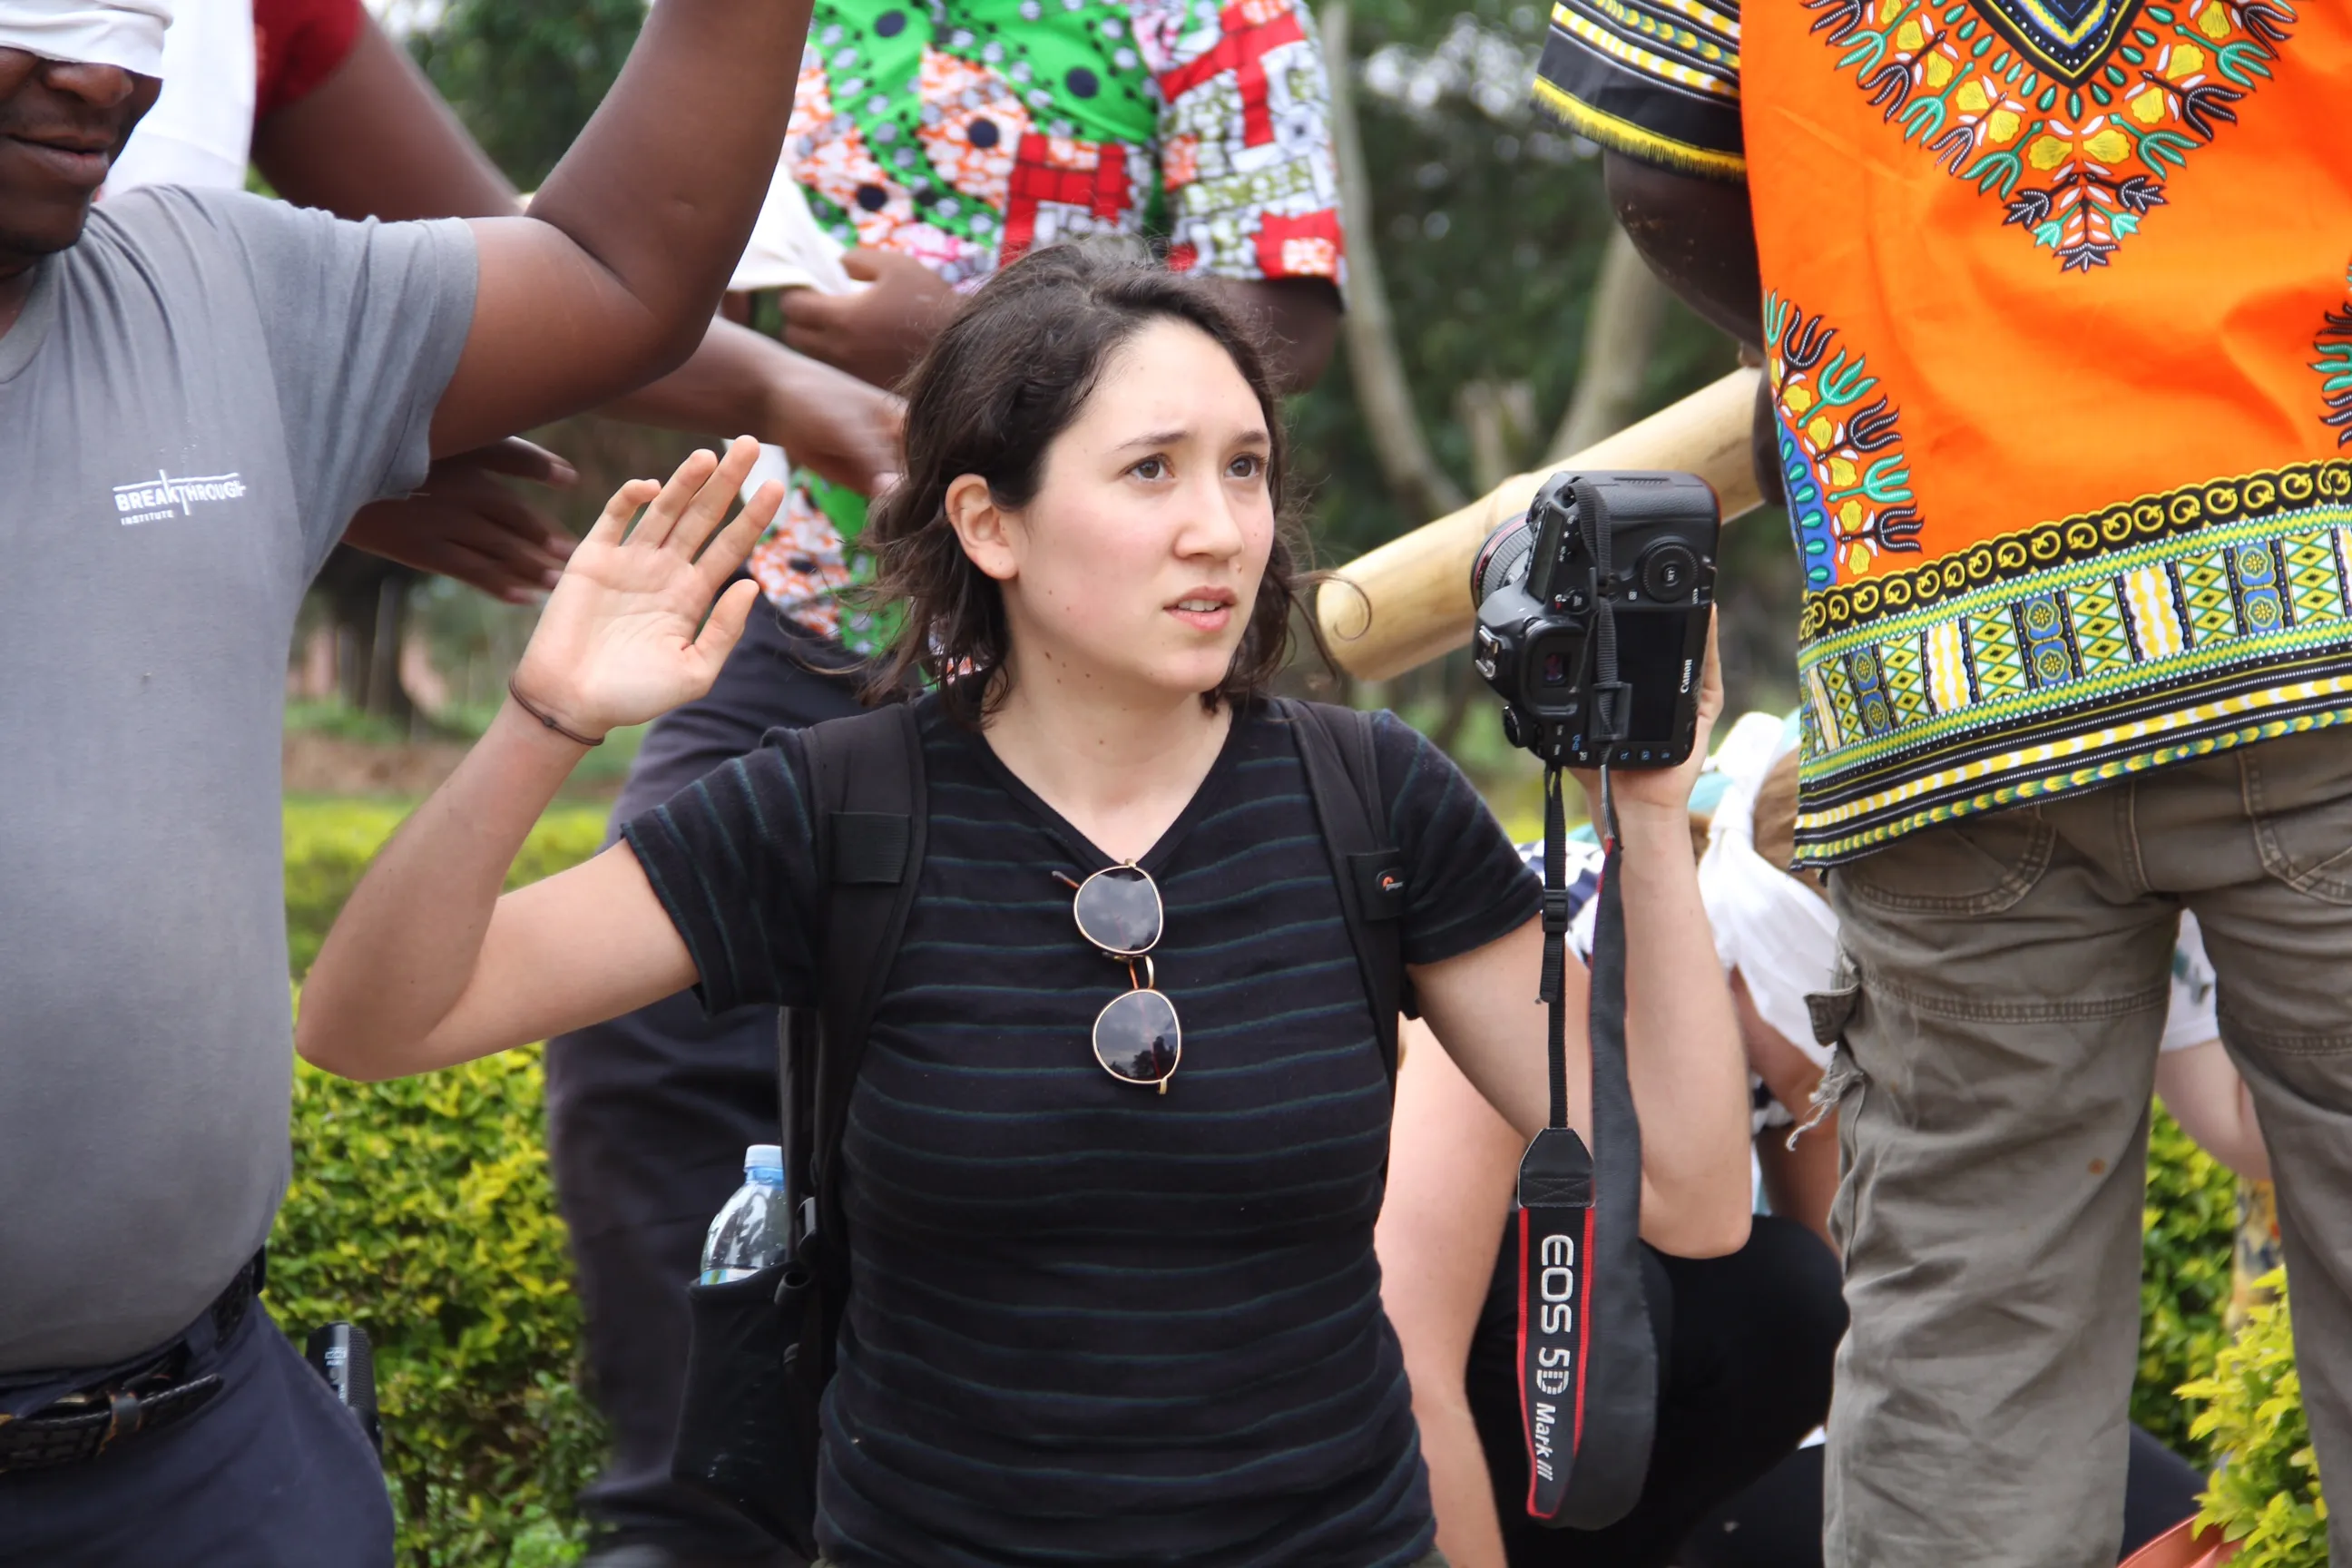 كاساندرا جيرالدو، صحفية تعمل مع المؤسسة الإعلامية الدولية للنساء، تشارك في تدريب في أوغندا حول التصرف في حالة الوقوع كرهينة. (كاتي مور)